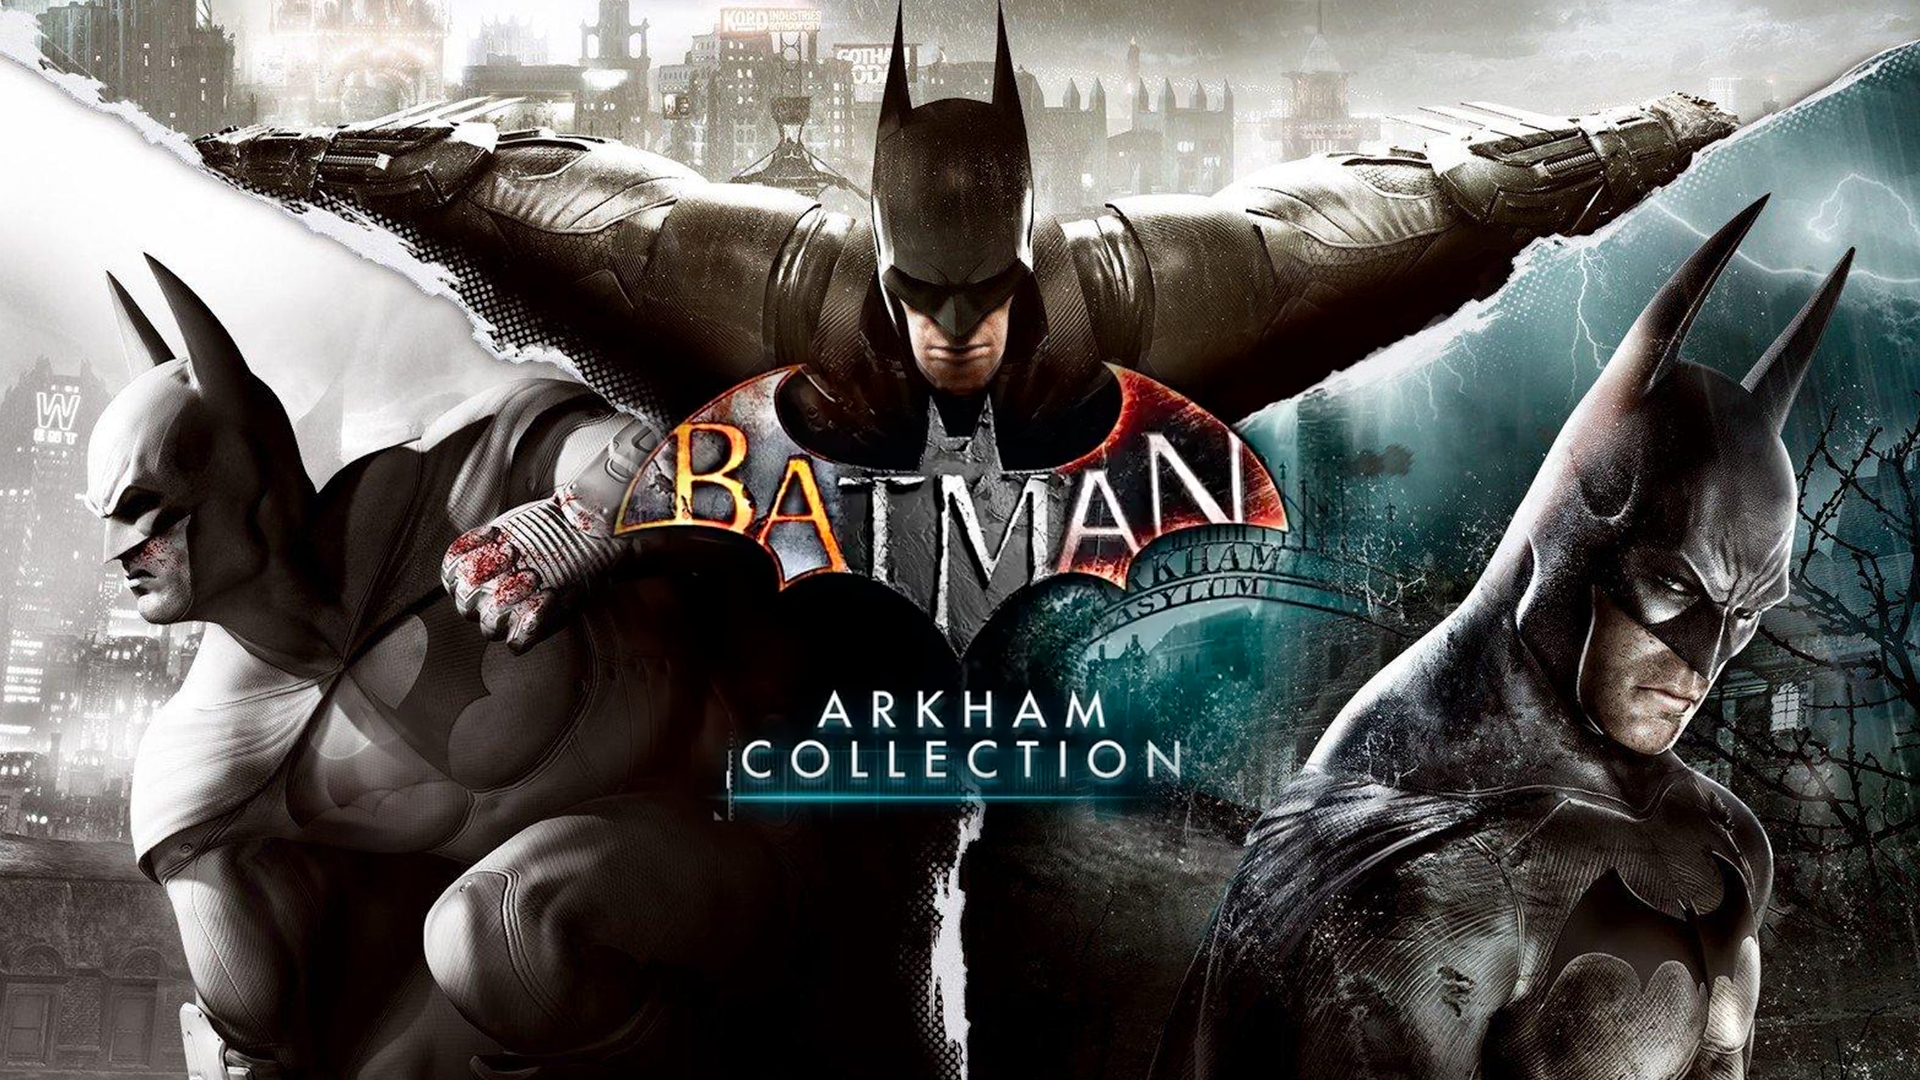 Político Parque jurásico Automatización Comprar Batman: Arkham Collection Steam